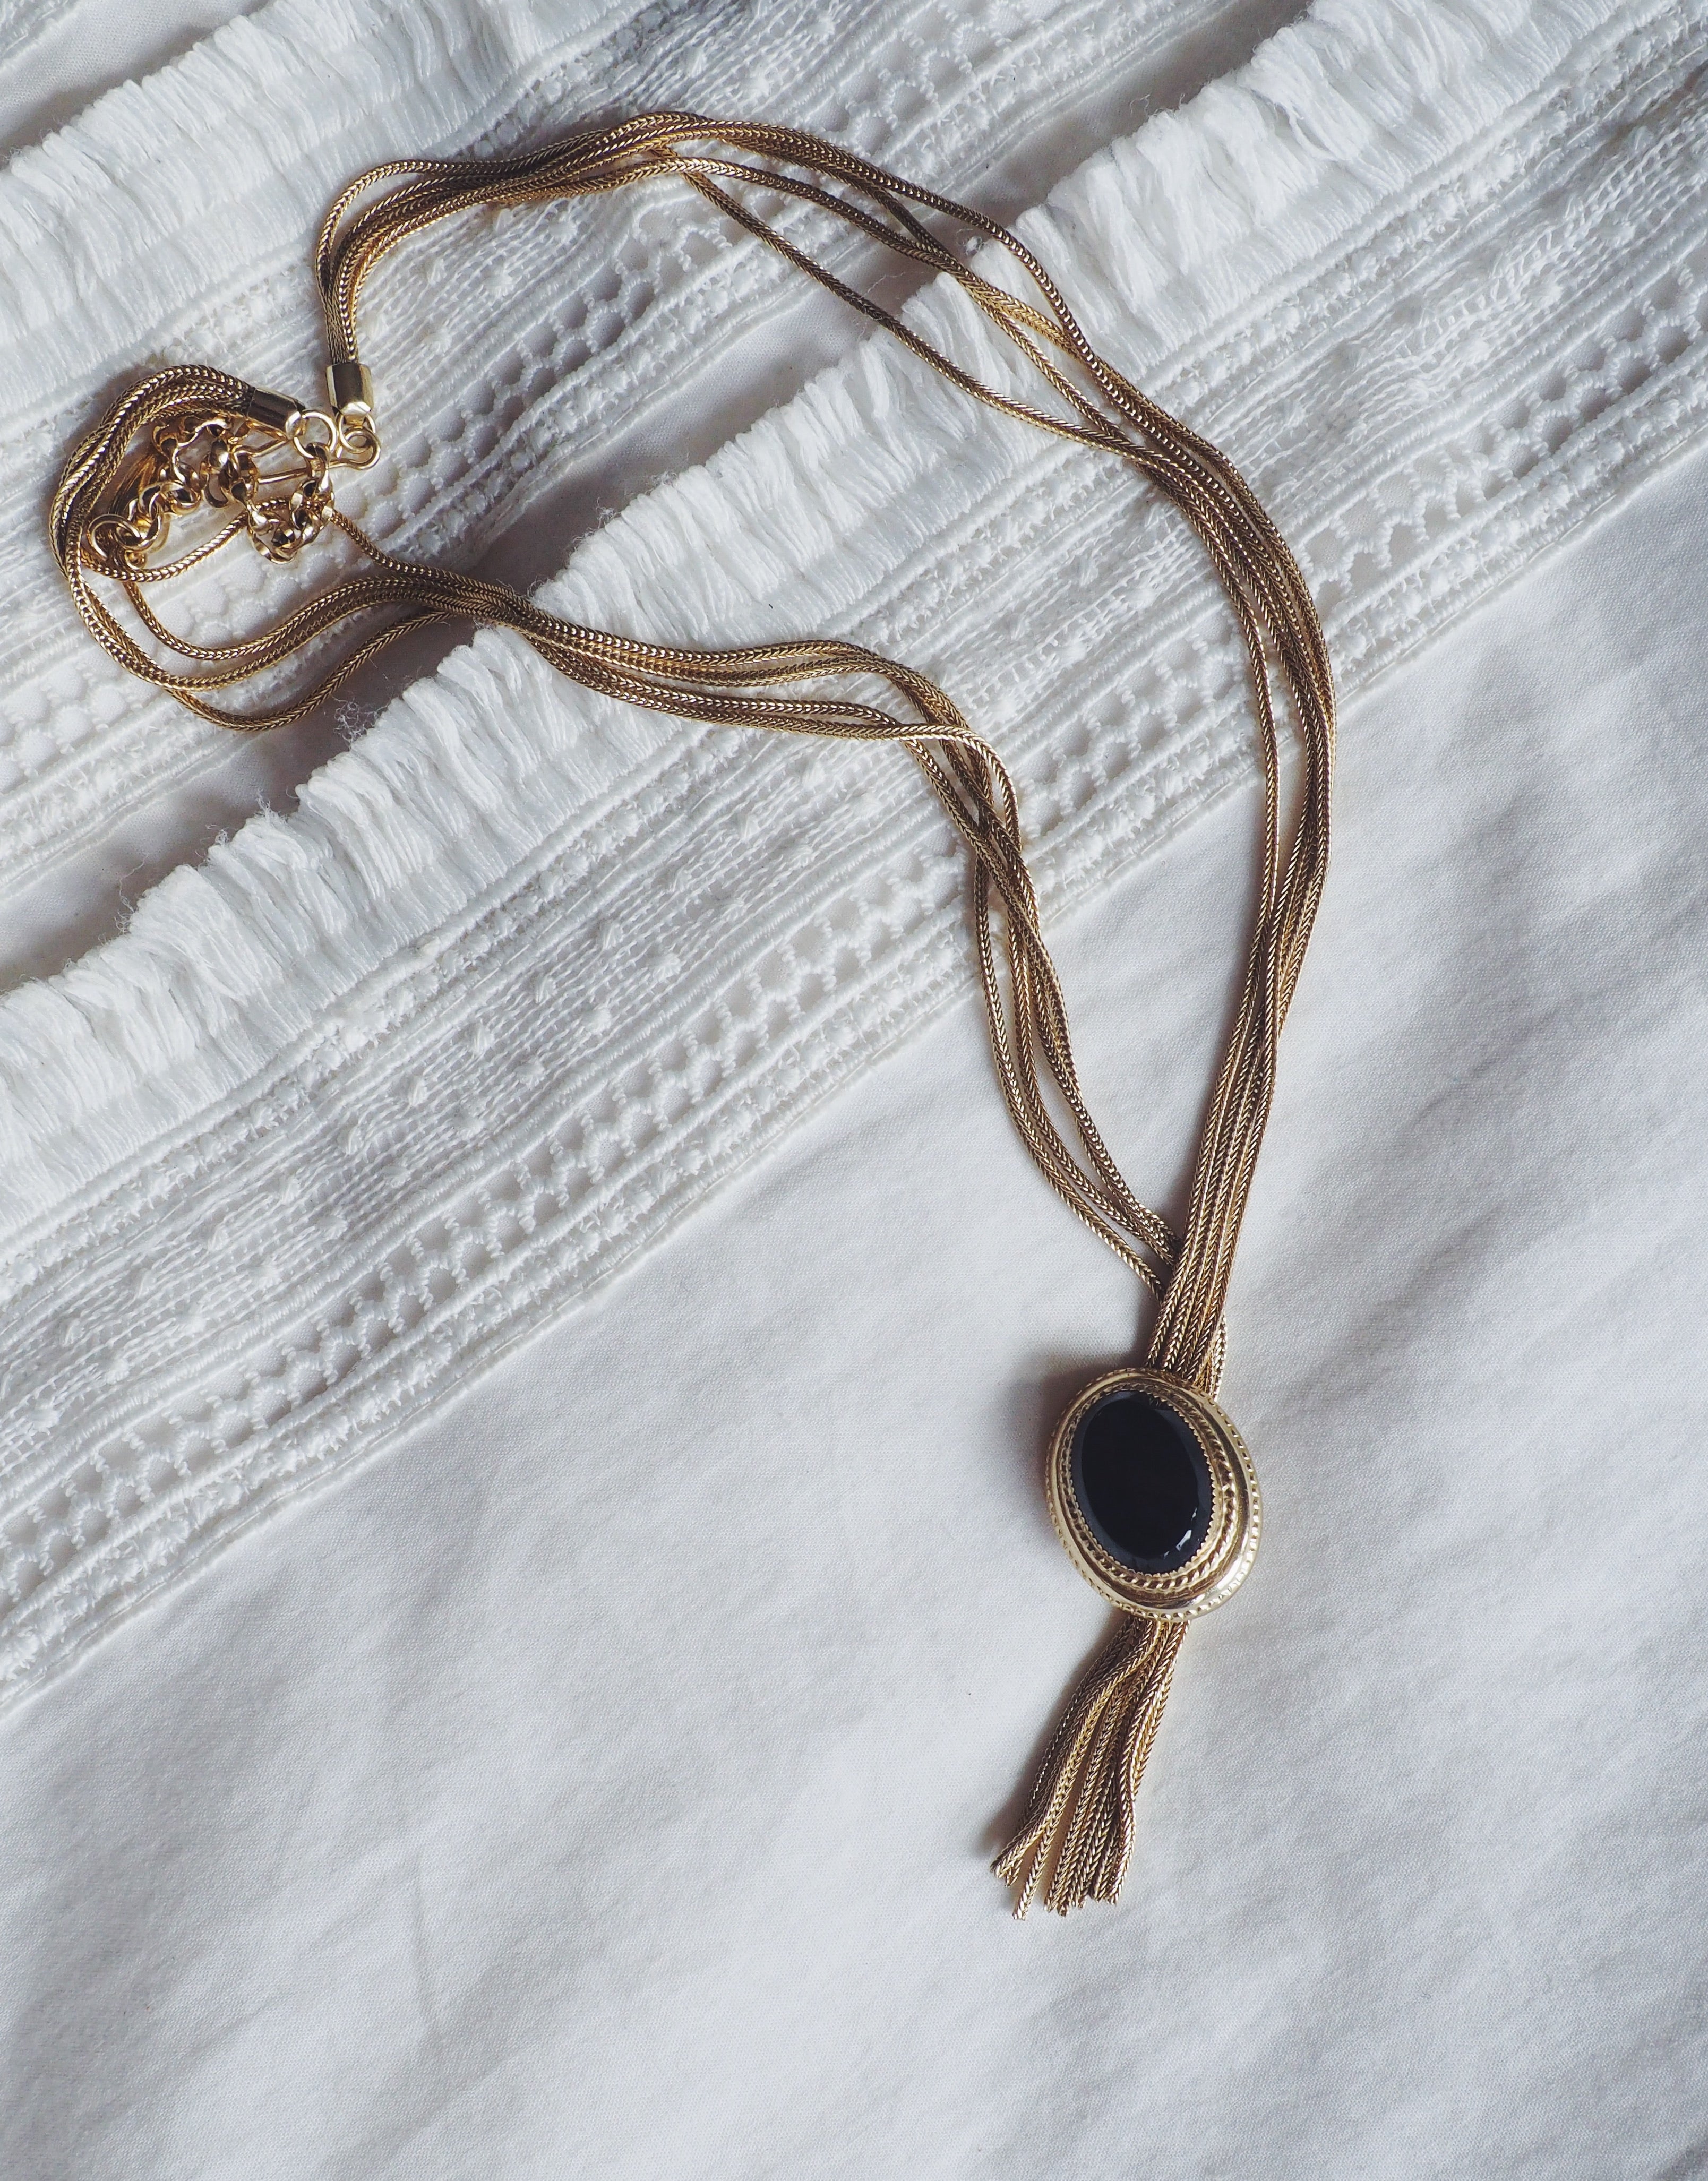 Gold & Black Pendant Necklace